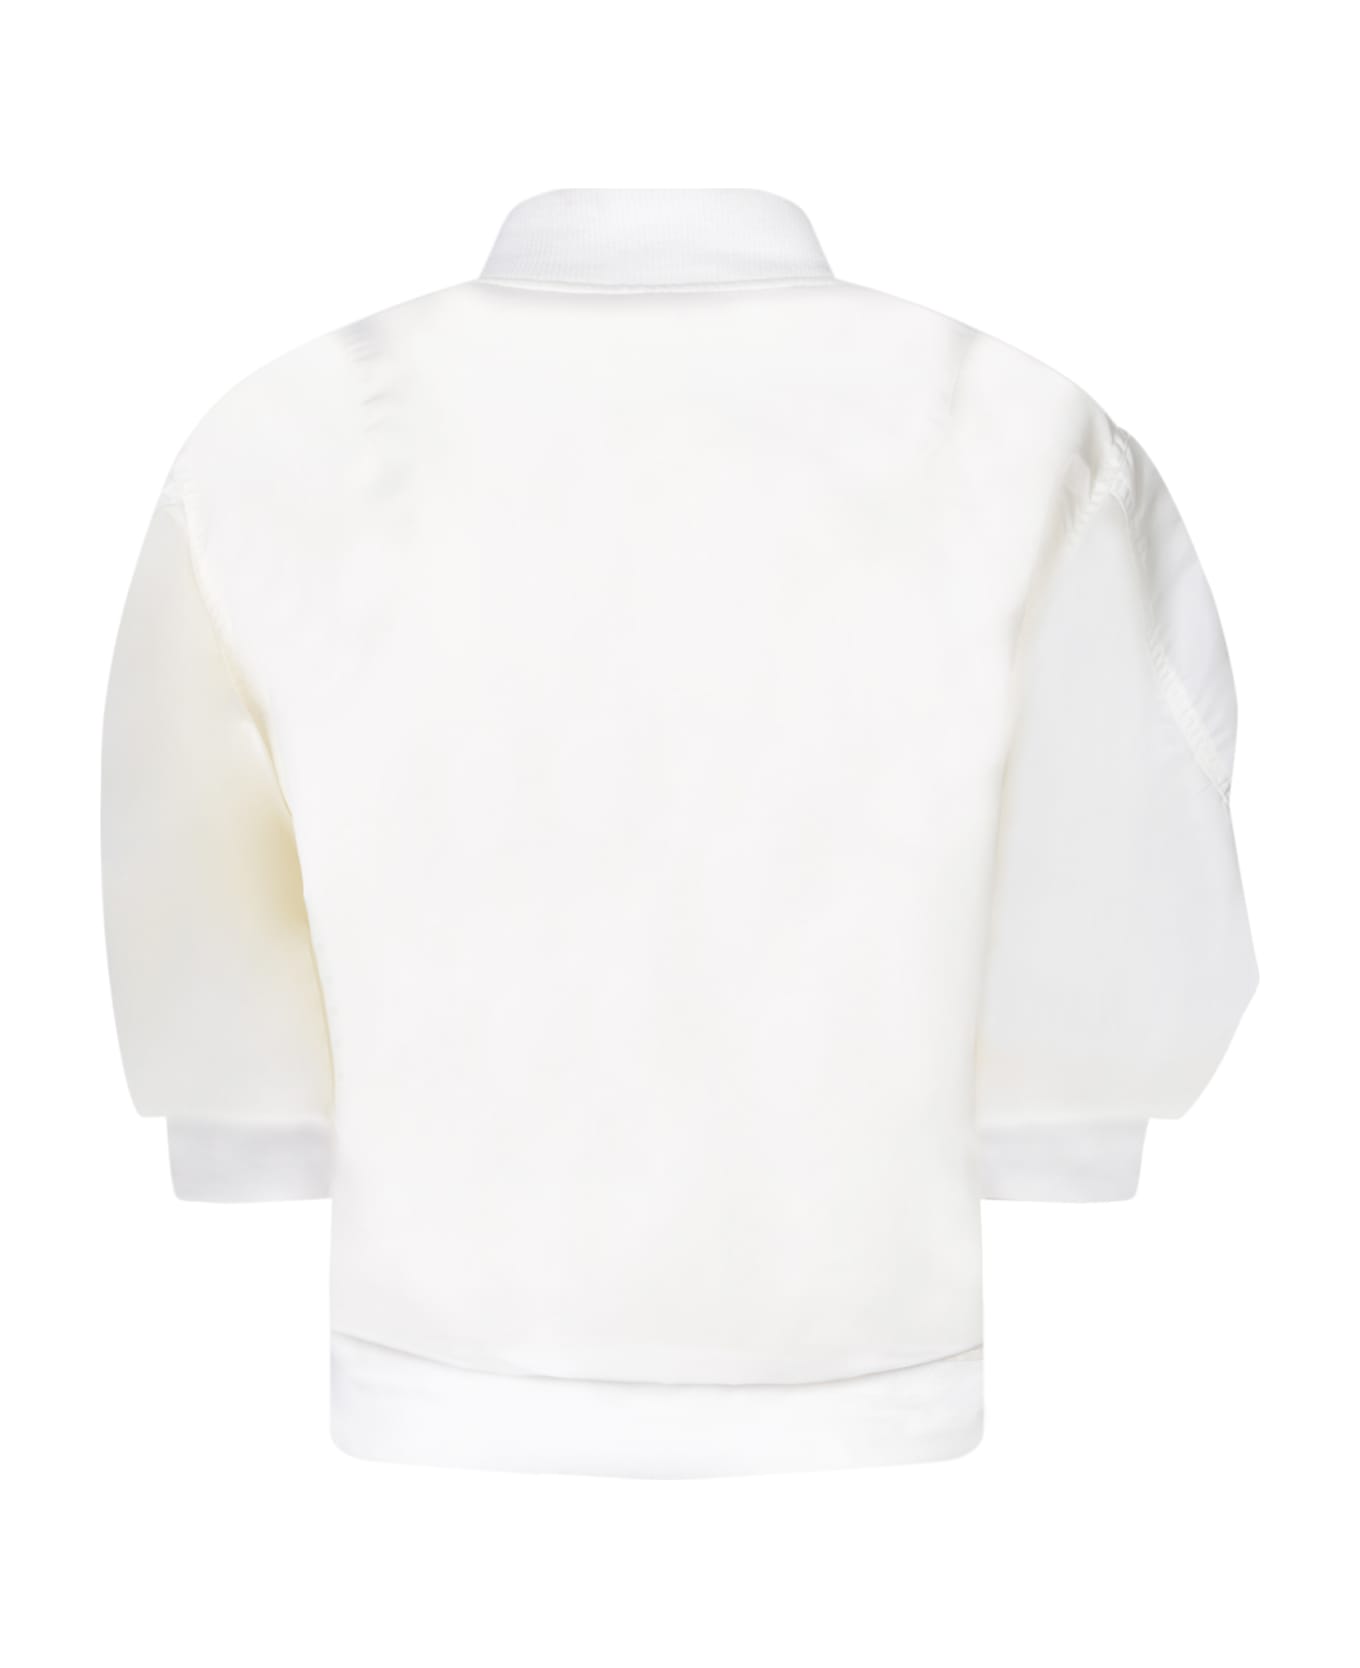 Sacai White Nylon Bomber With Puff Sleeves - OFF WHITE